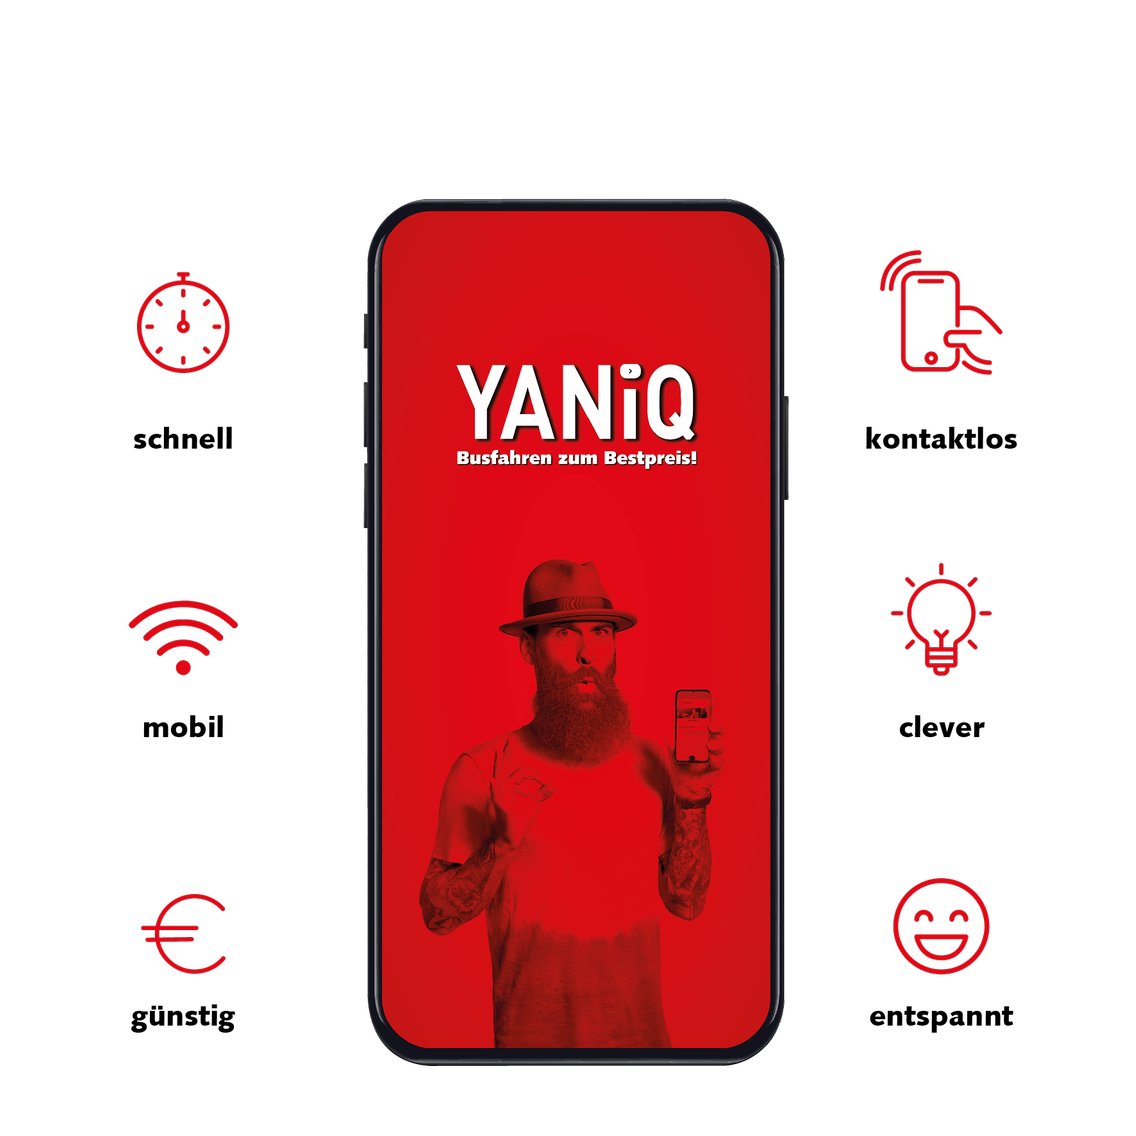 Vorteile der Bestpreis App YANiQ